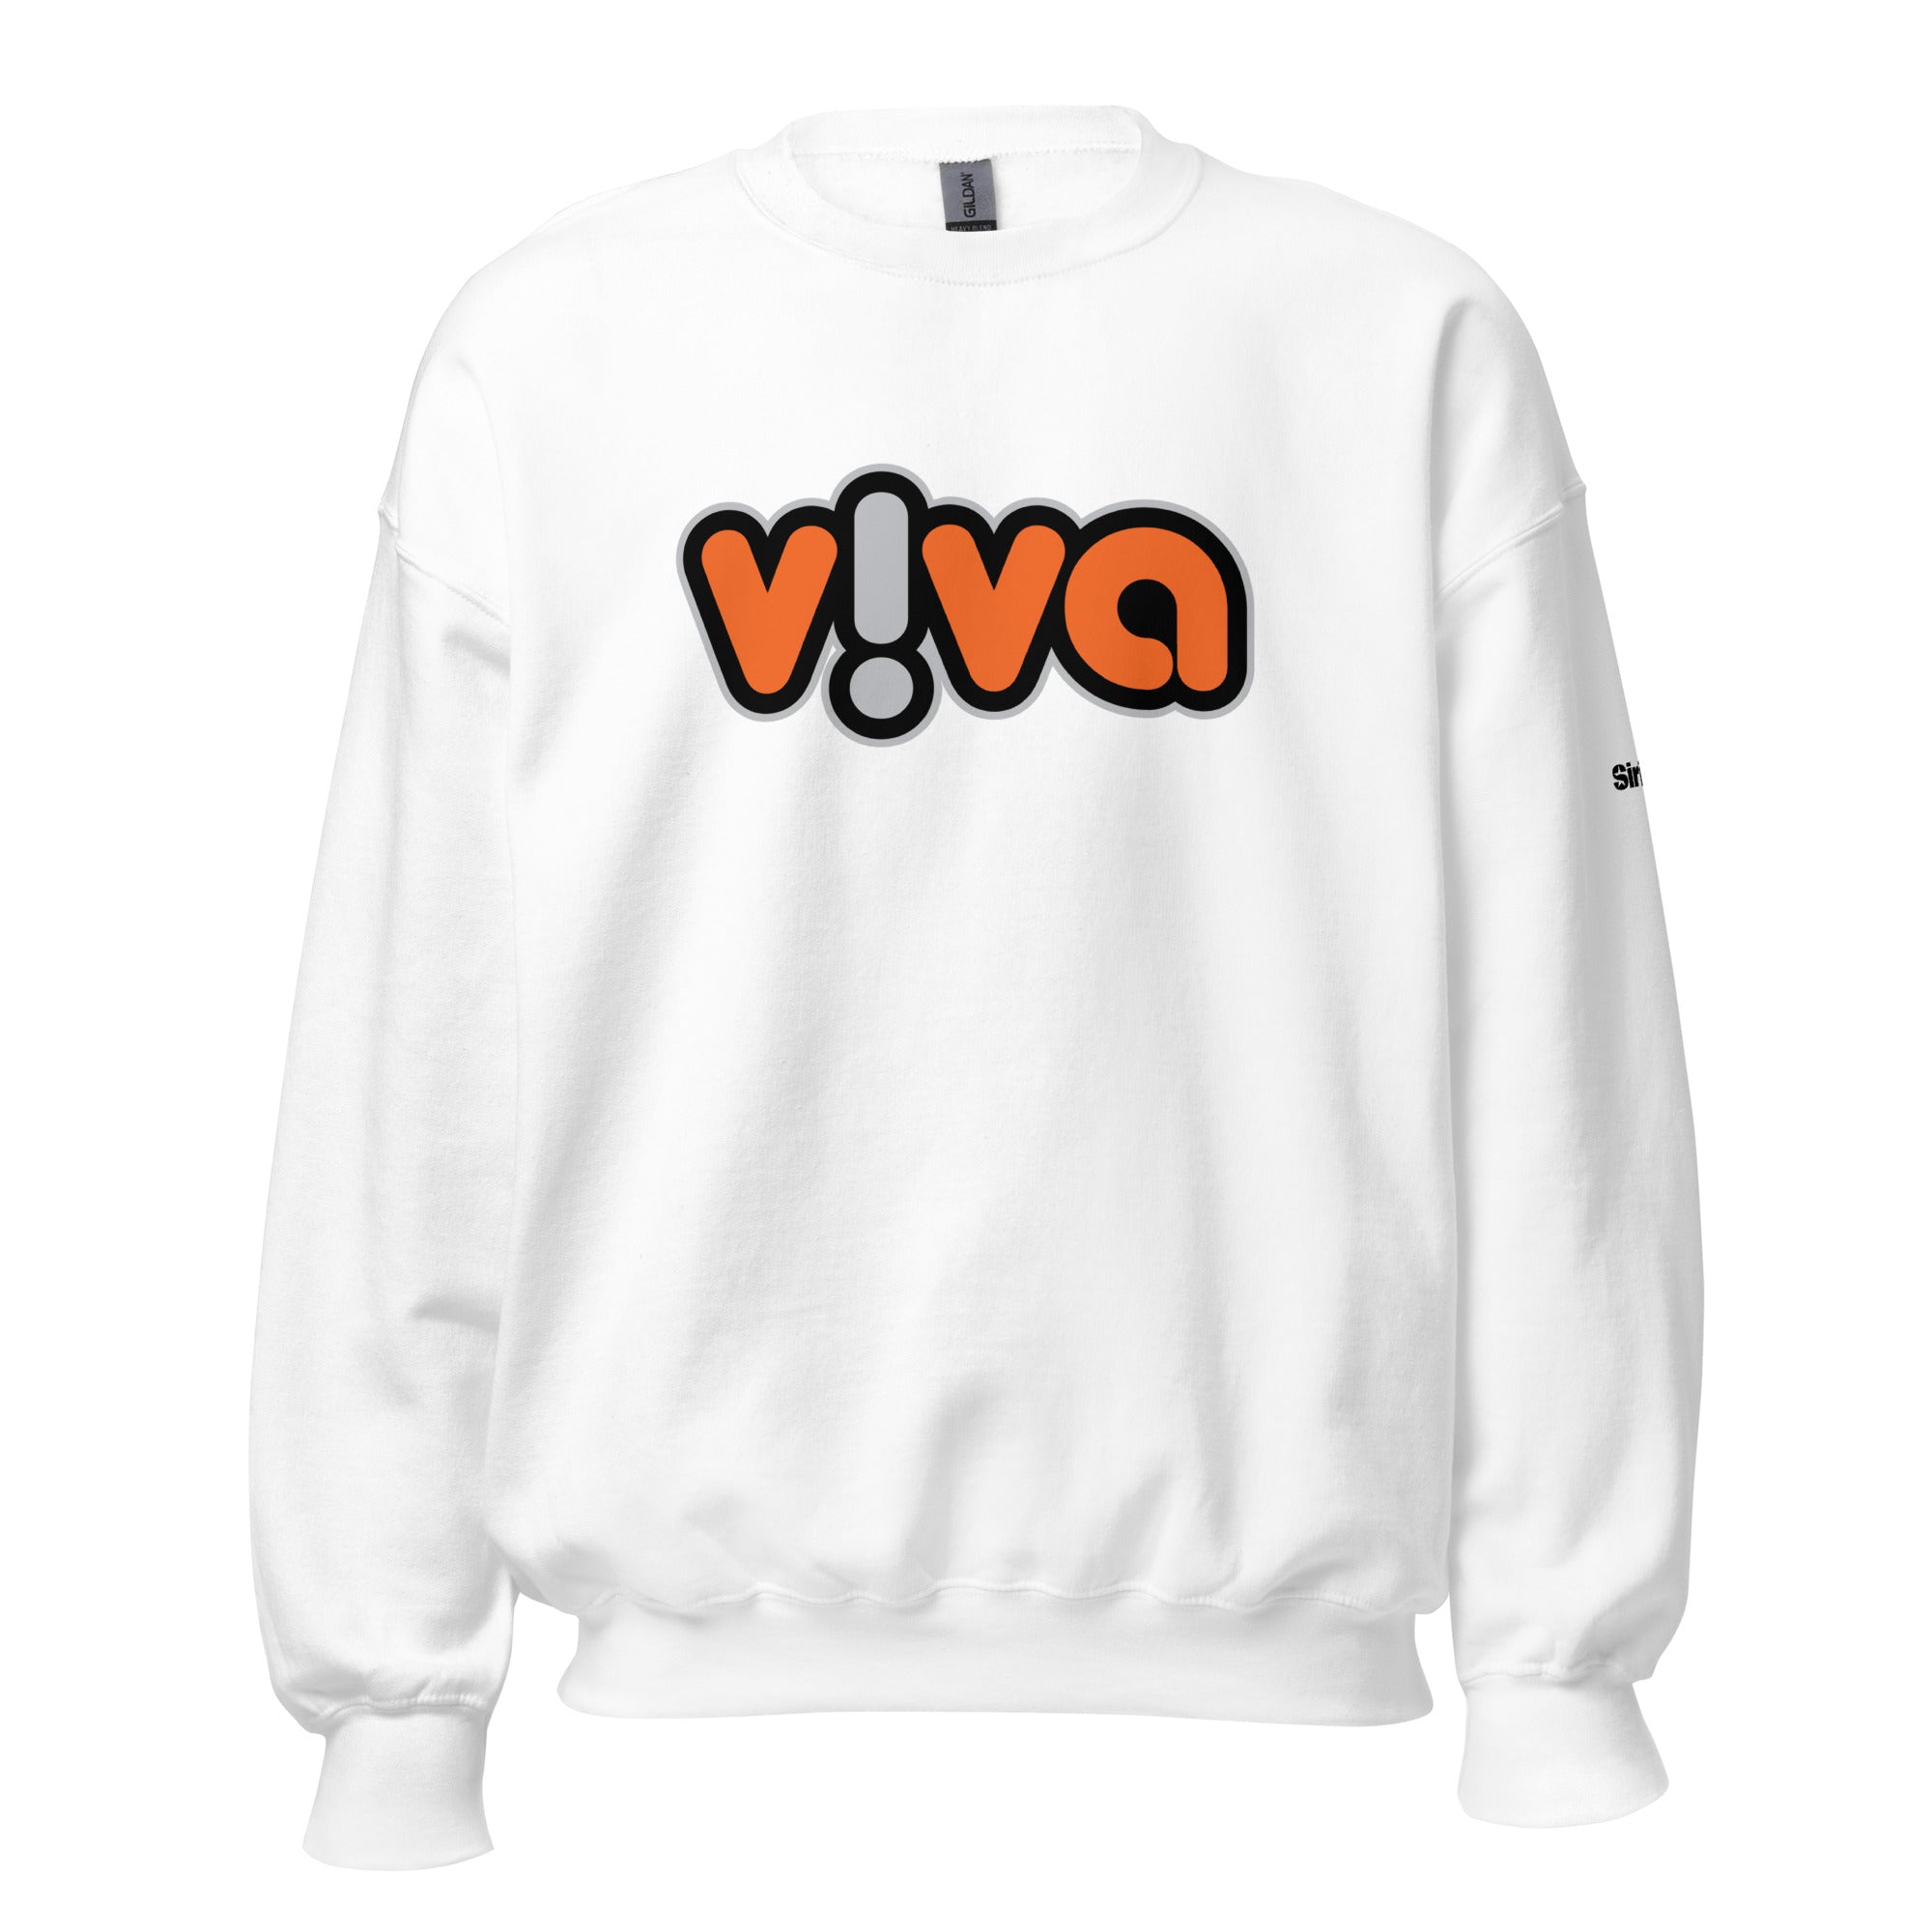 Viva: Sweatshirt (White)